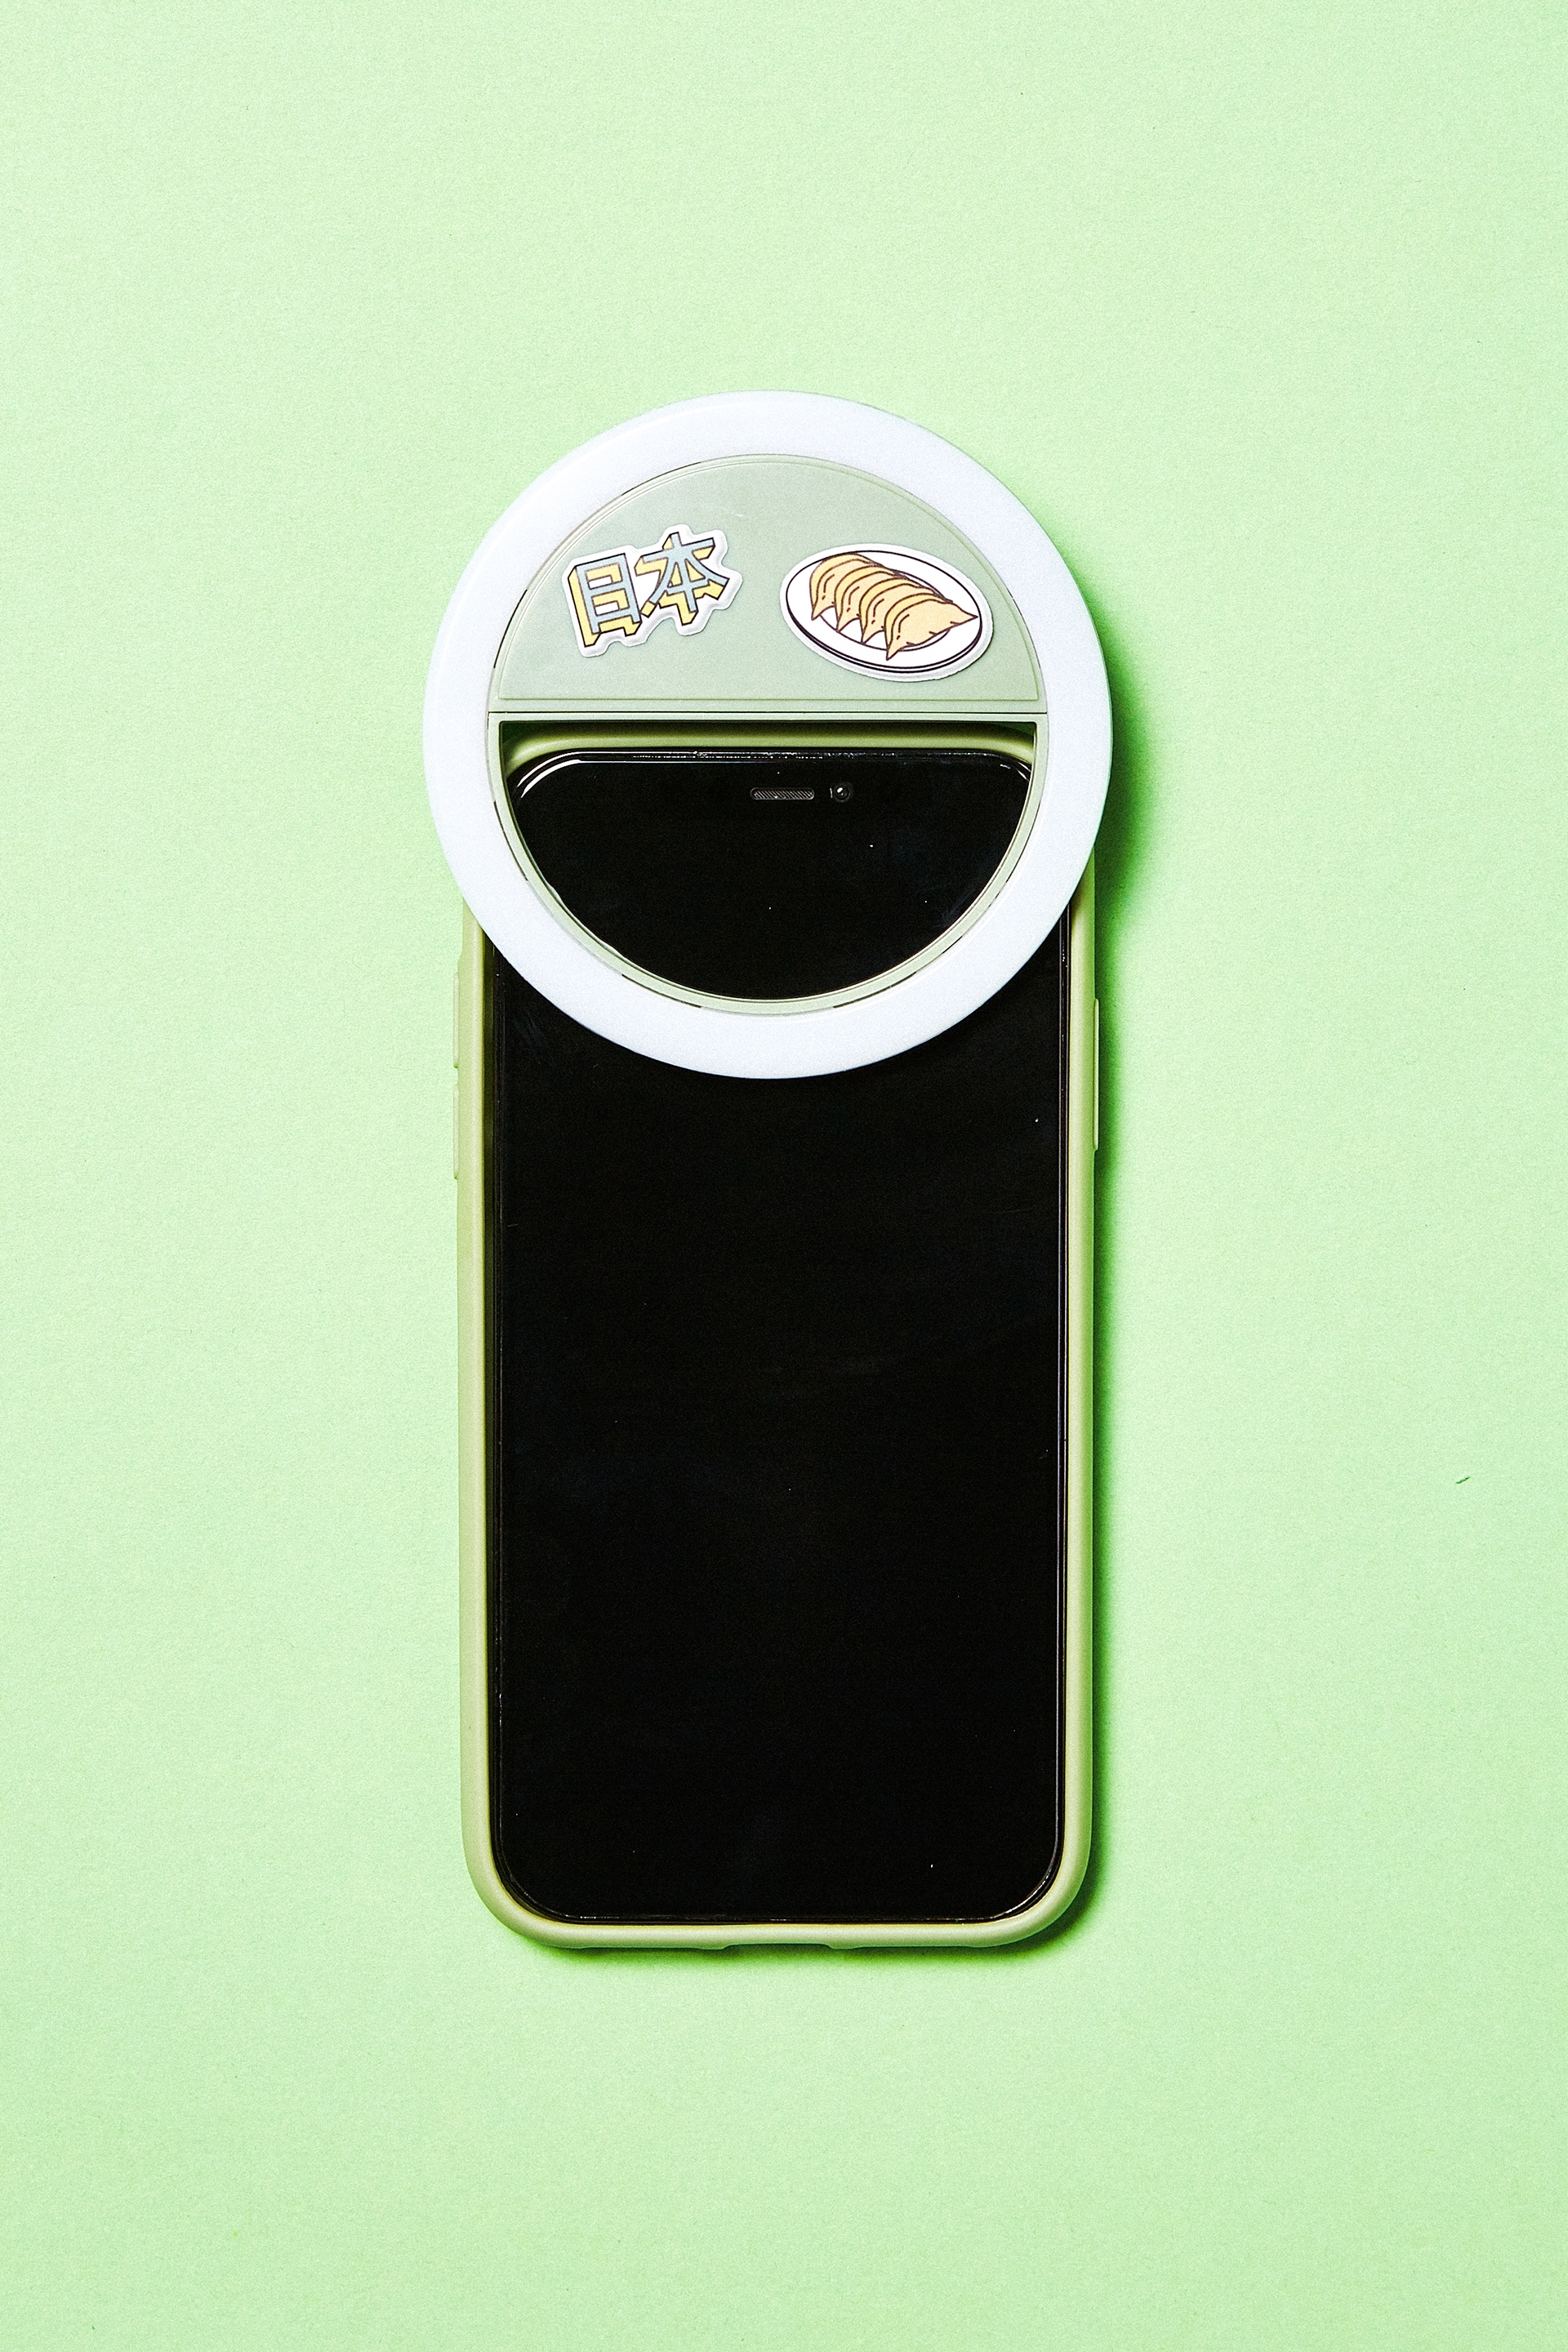 Typo - Selfie Phone Ring Light - Gum leaf